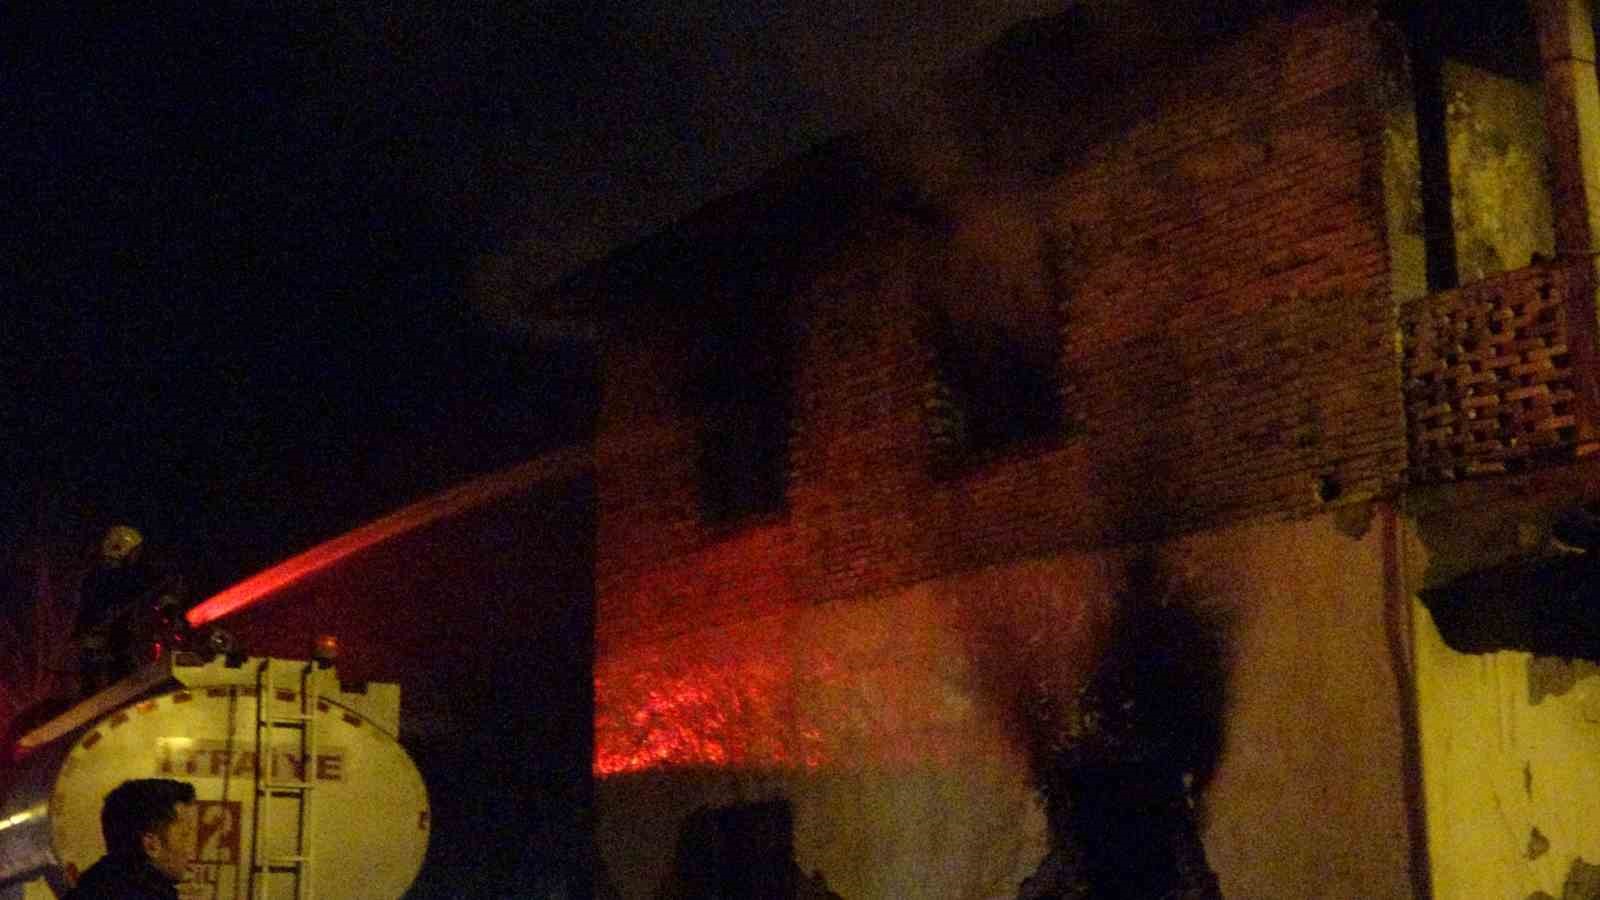 Adana’da evde çıkan yangında anne ve iki çocuğu hayatını kaybetti
